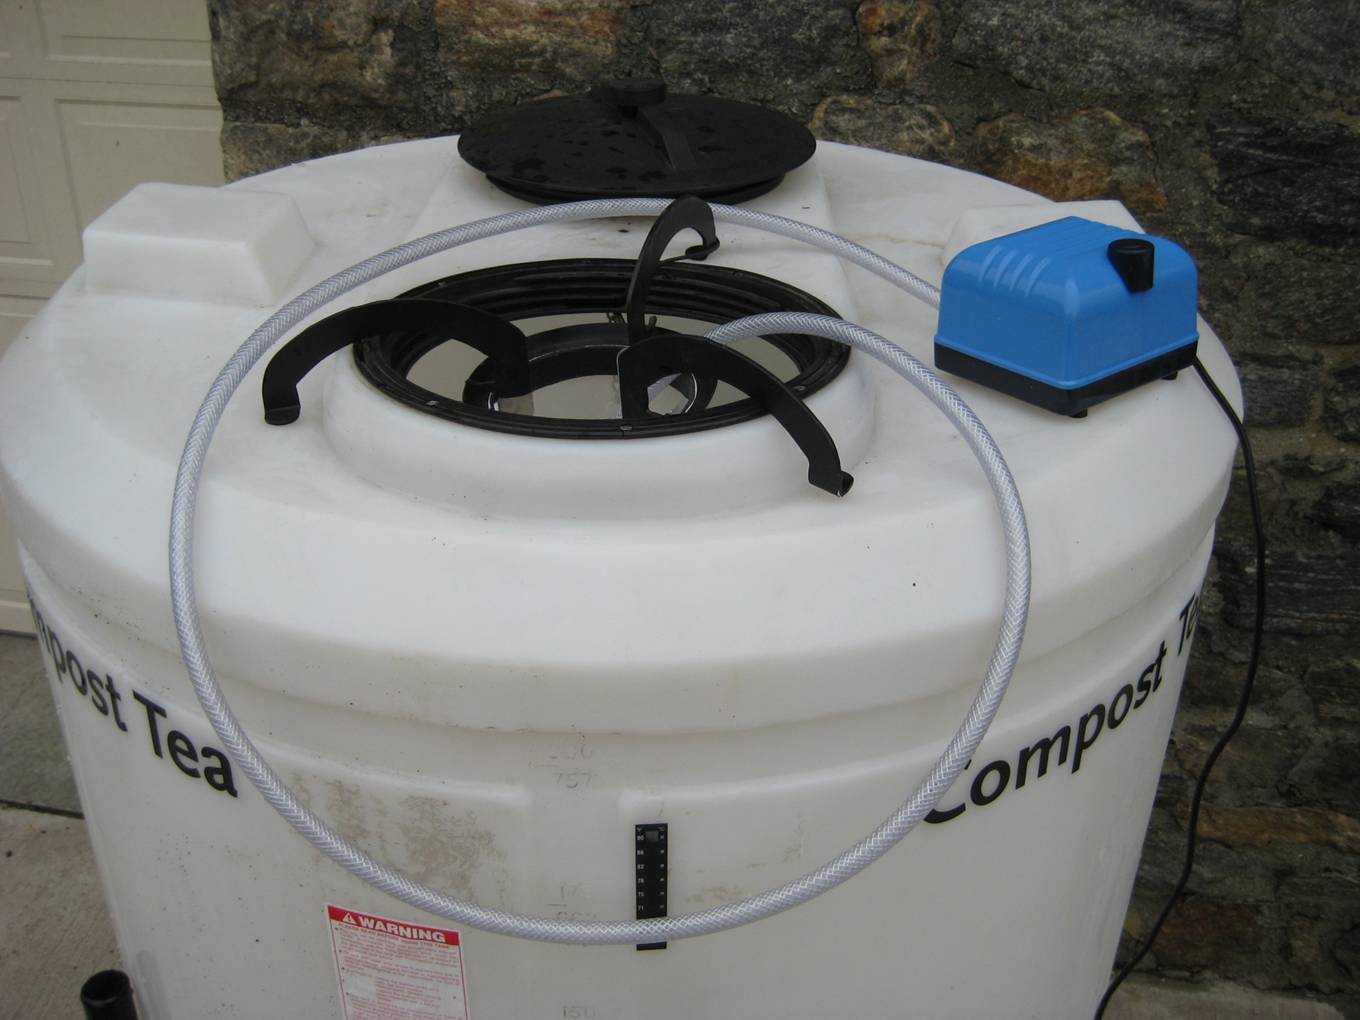 Liquid Compost Extractors Compost Tea Extraction